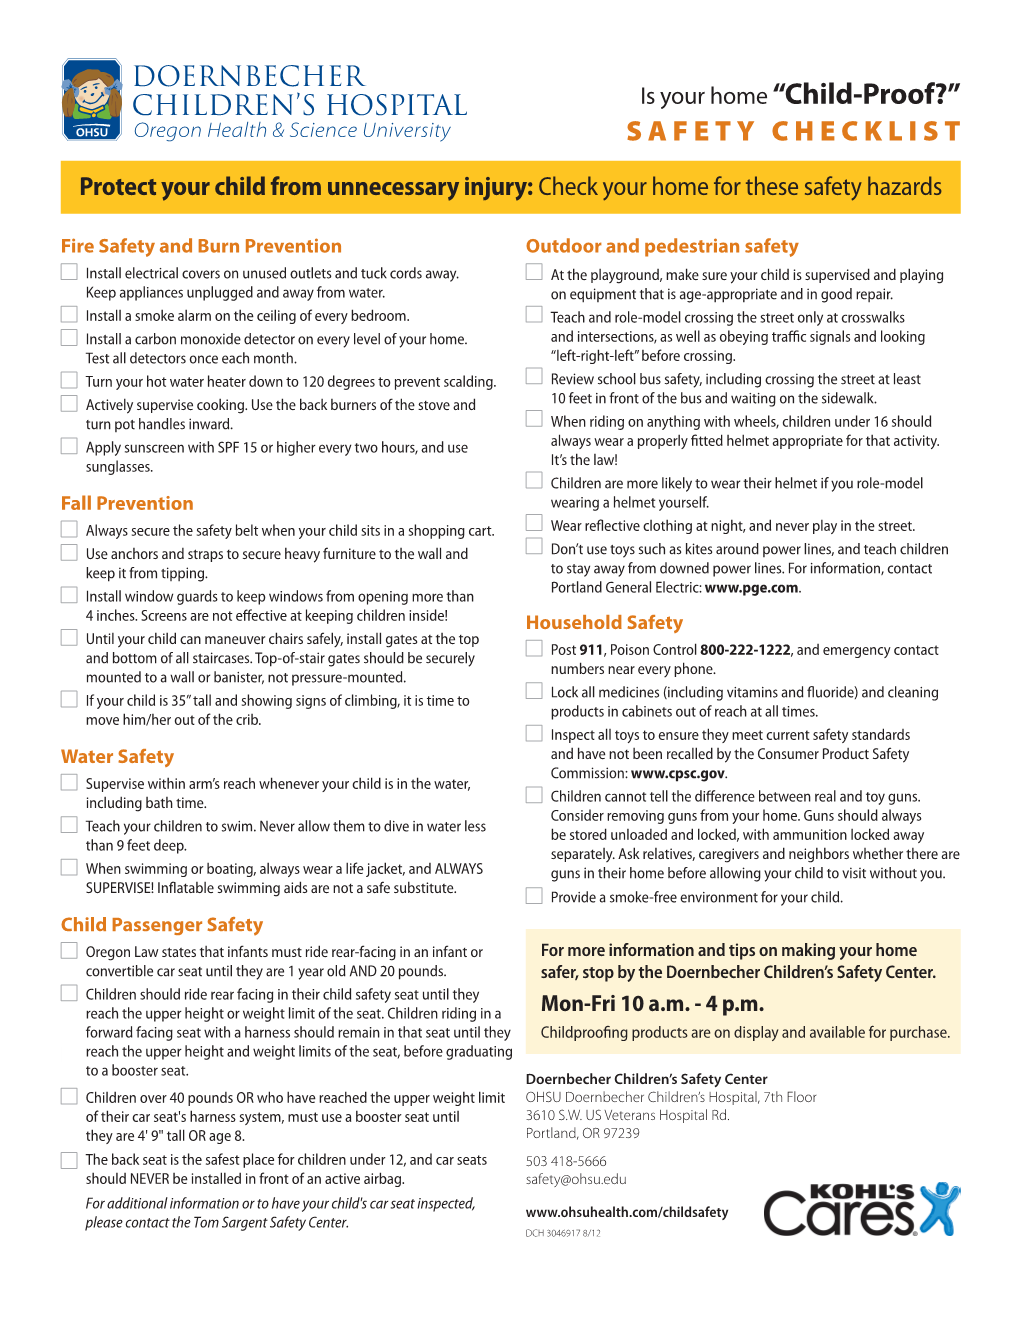 OHSU Doernbecher “Child-Proof” Safety Checklist